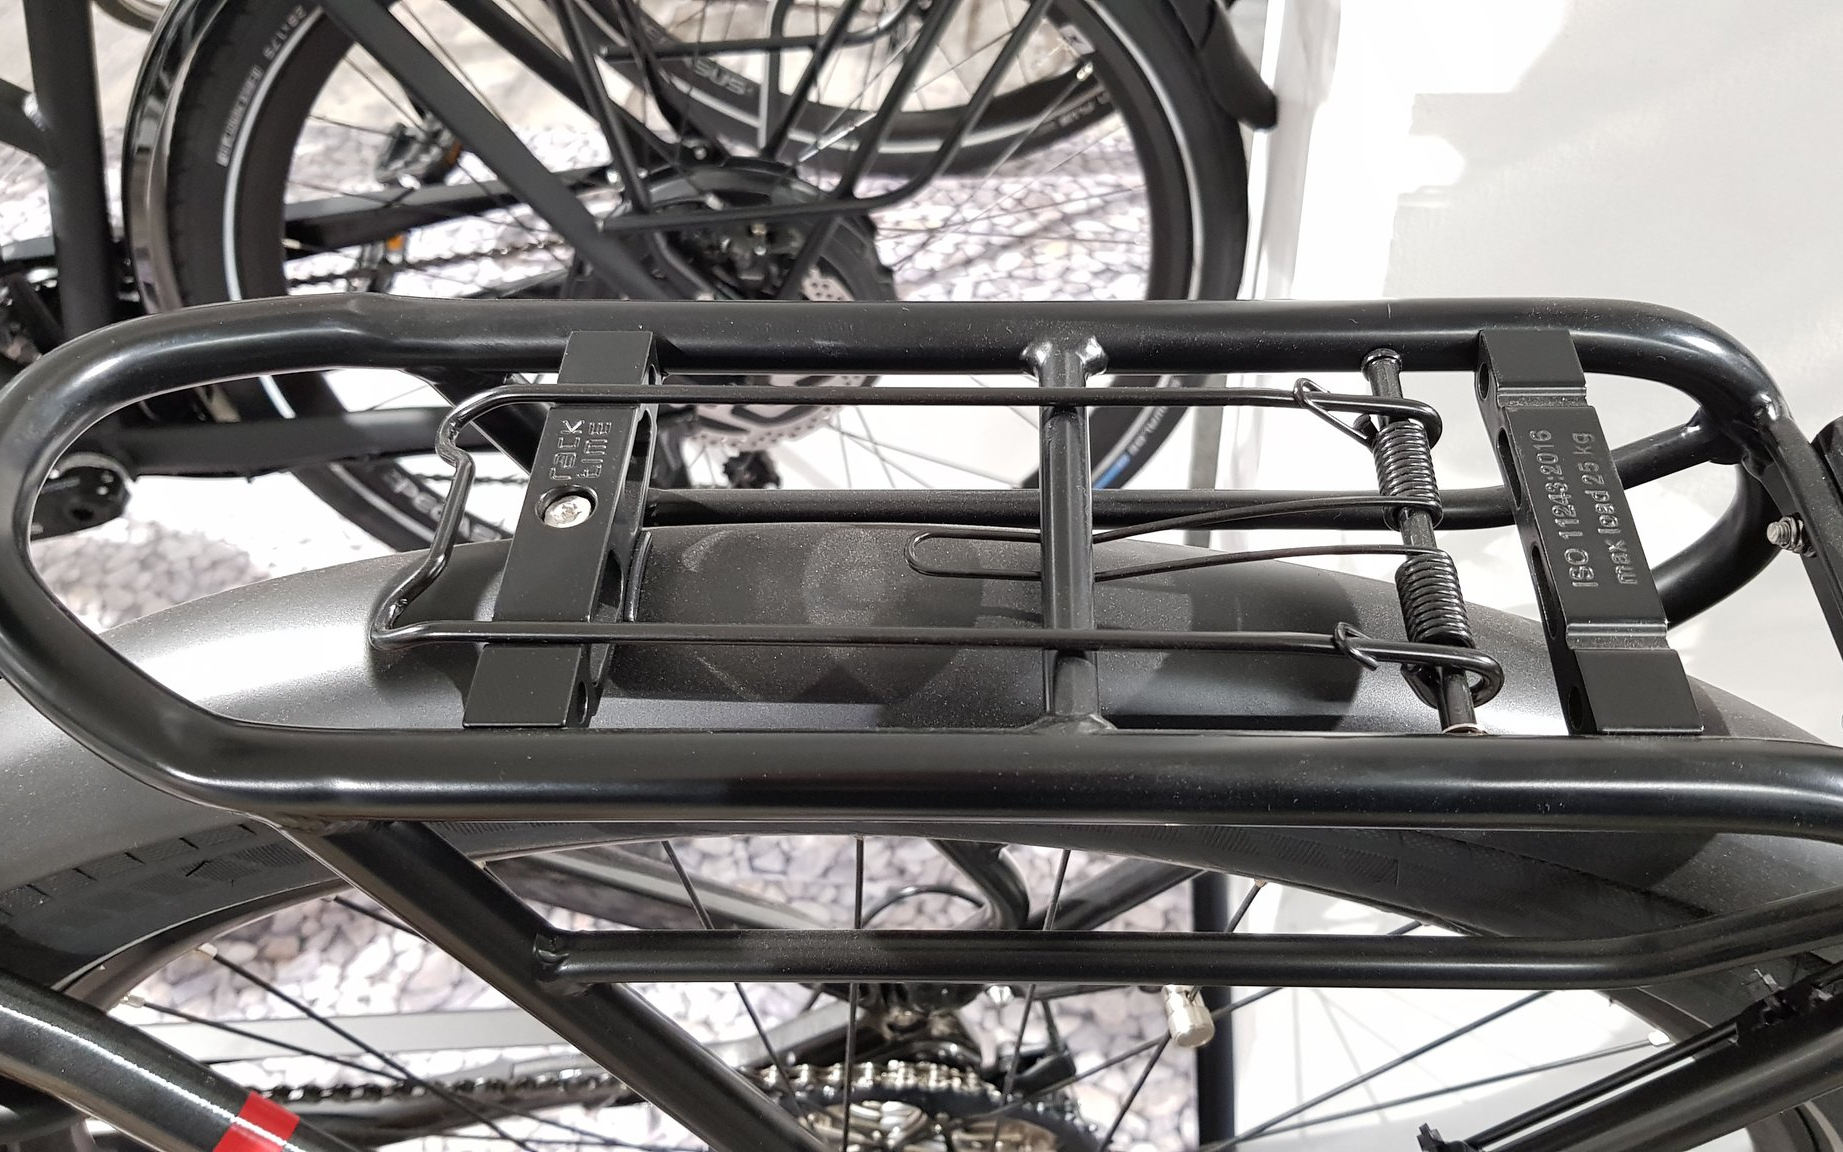 Installing Rear Bike Rack